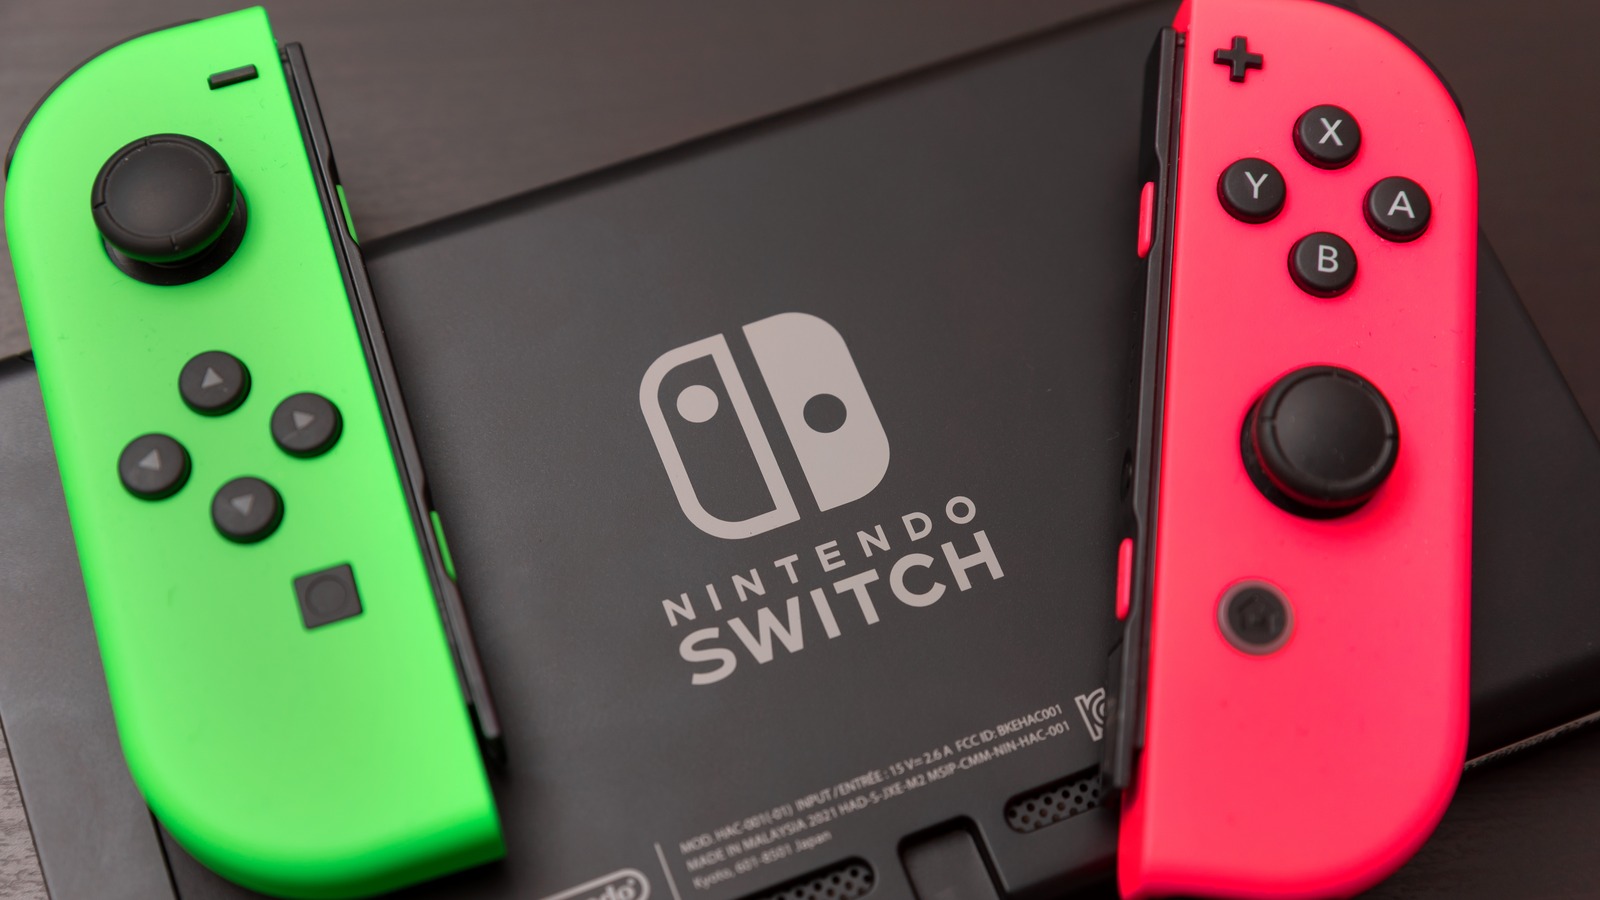 Roblox en Nintendo Switch: ¿Es posible que llegue a la consola? -  Nintenderos